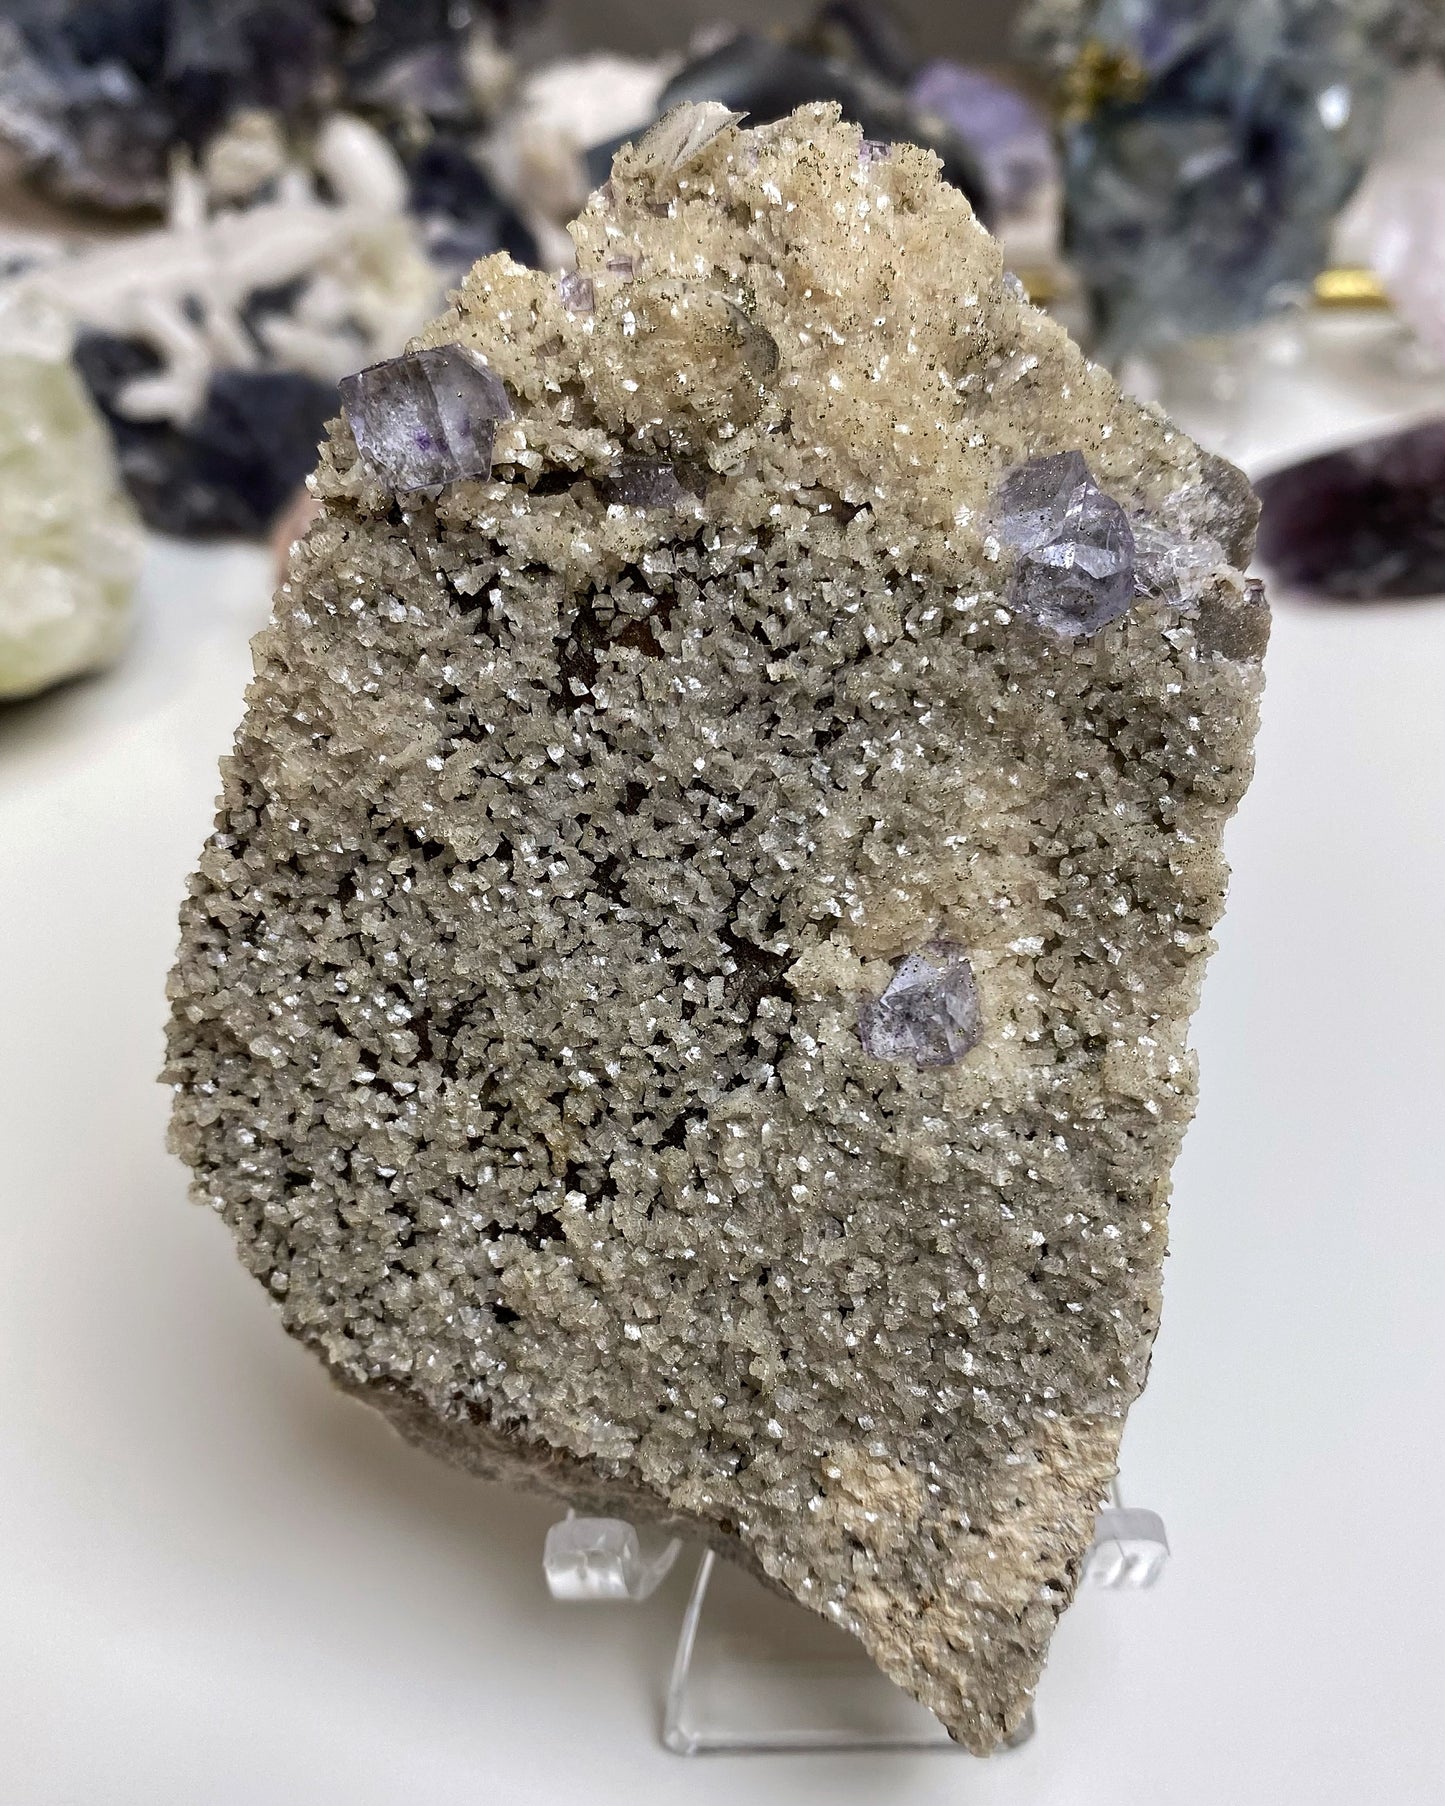 Purple Glassy Fluorite with Pyrite, Dolomite, Calcite